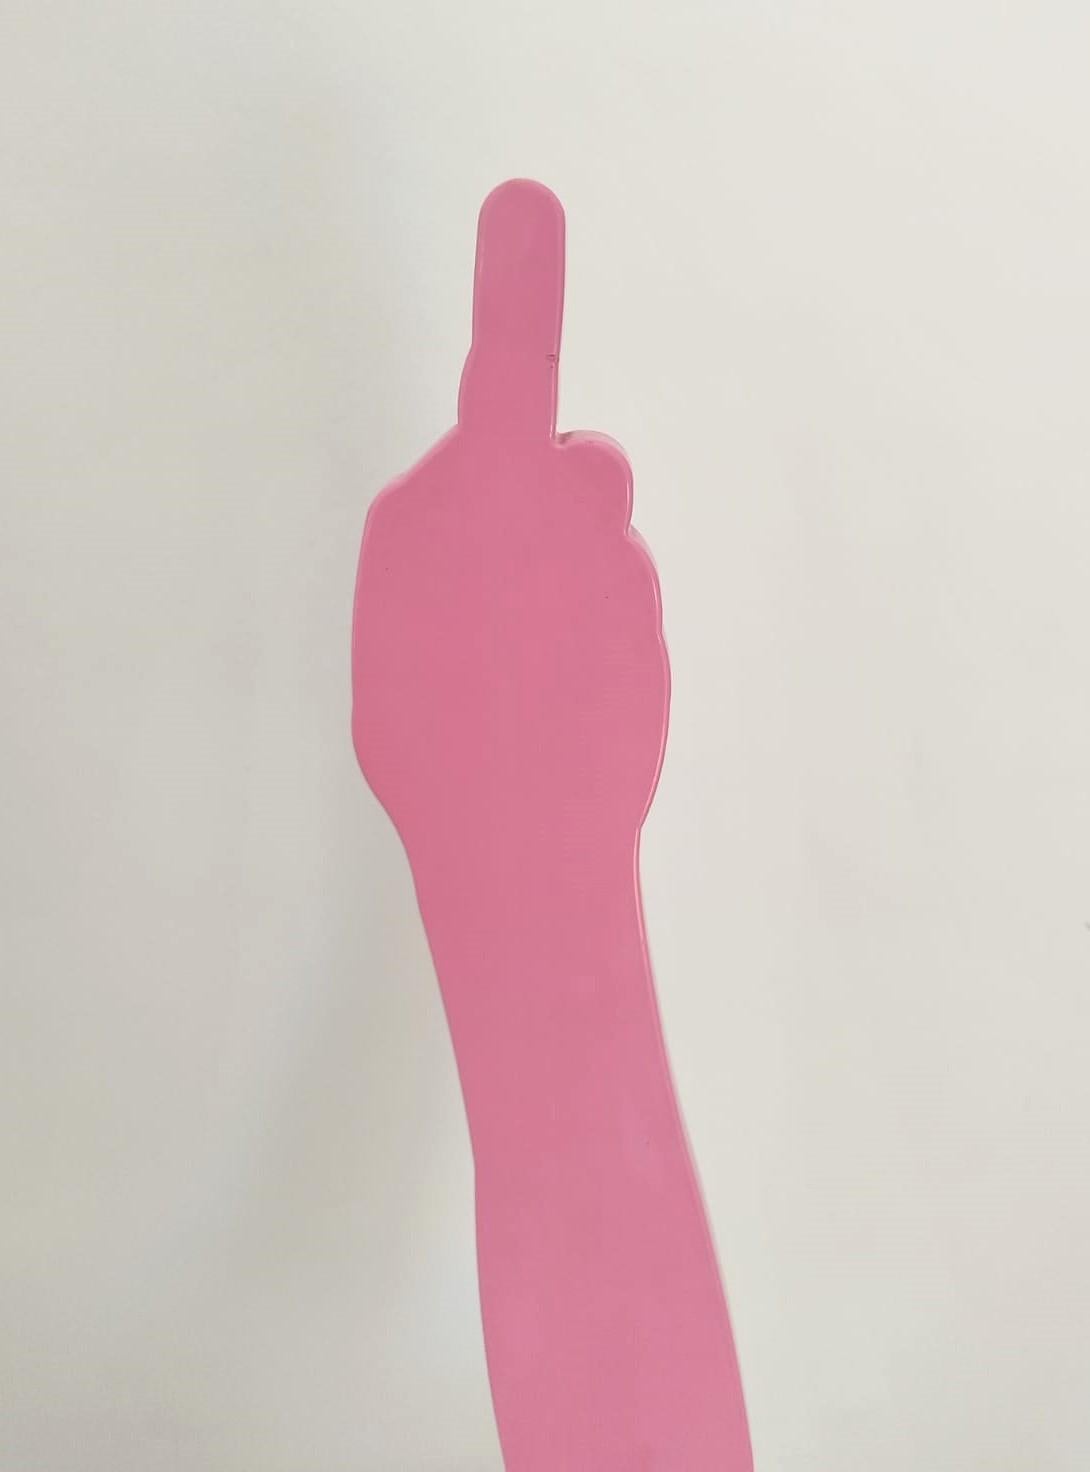 Eine Skulptur aus rosa pulverbeschichtetem Baustahl in limitierter Auflage auf einem schwarzen Stahlsockel. Die Skulptur ist typisch für Uwe Pfaffs augenzwinkernde Herangehensweise und stellt einen menschlichen Arm dar, der den Mittelfinger zeigt.